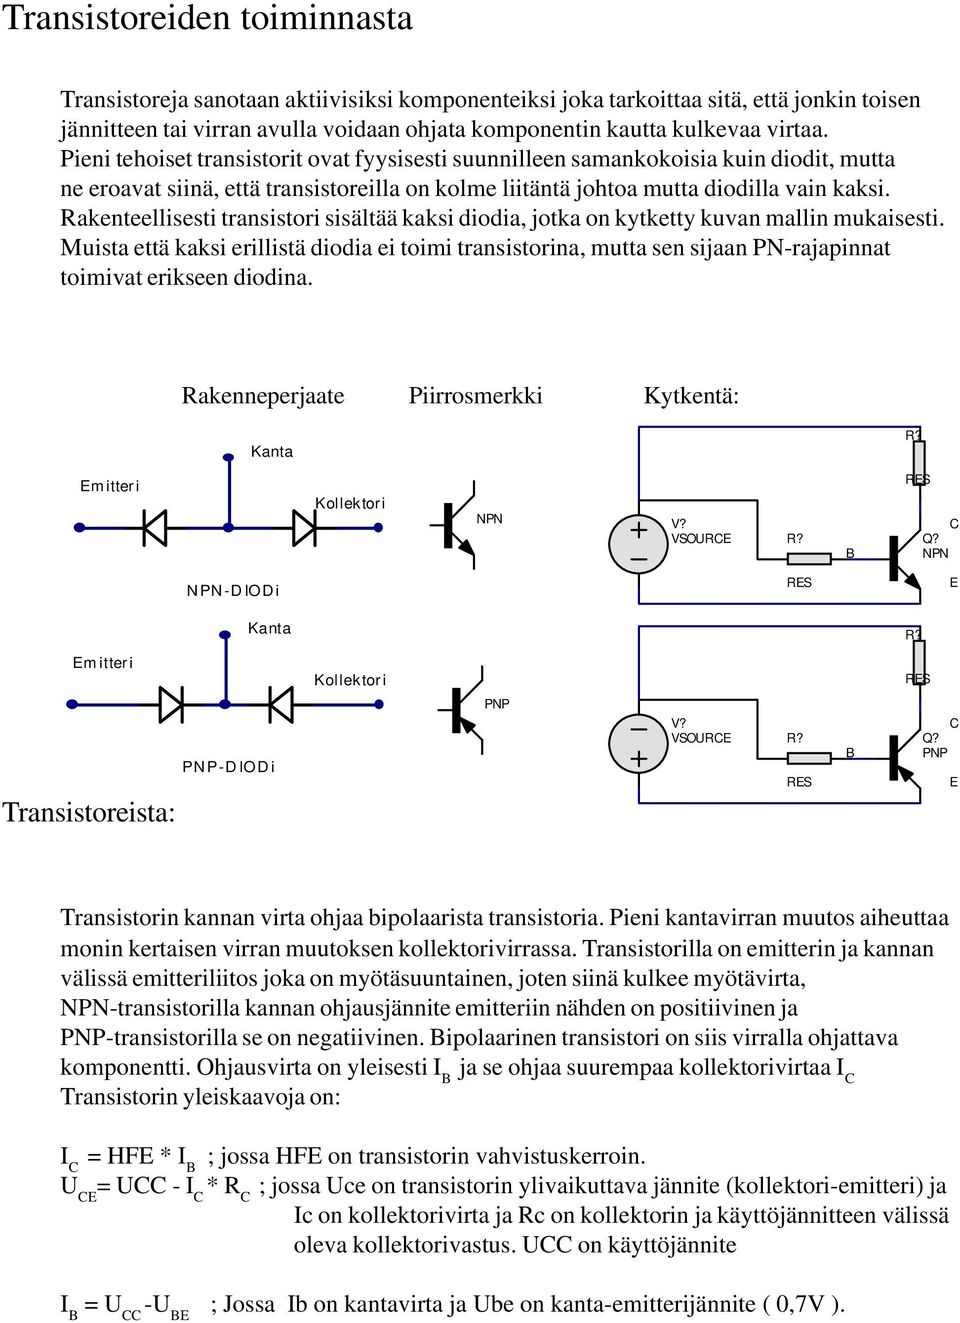 Rakenteellisesti transistori sisältää kaksi diodia, jotka on kytketty kuvan mallin mukaisesti.